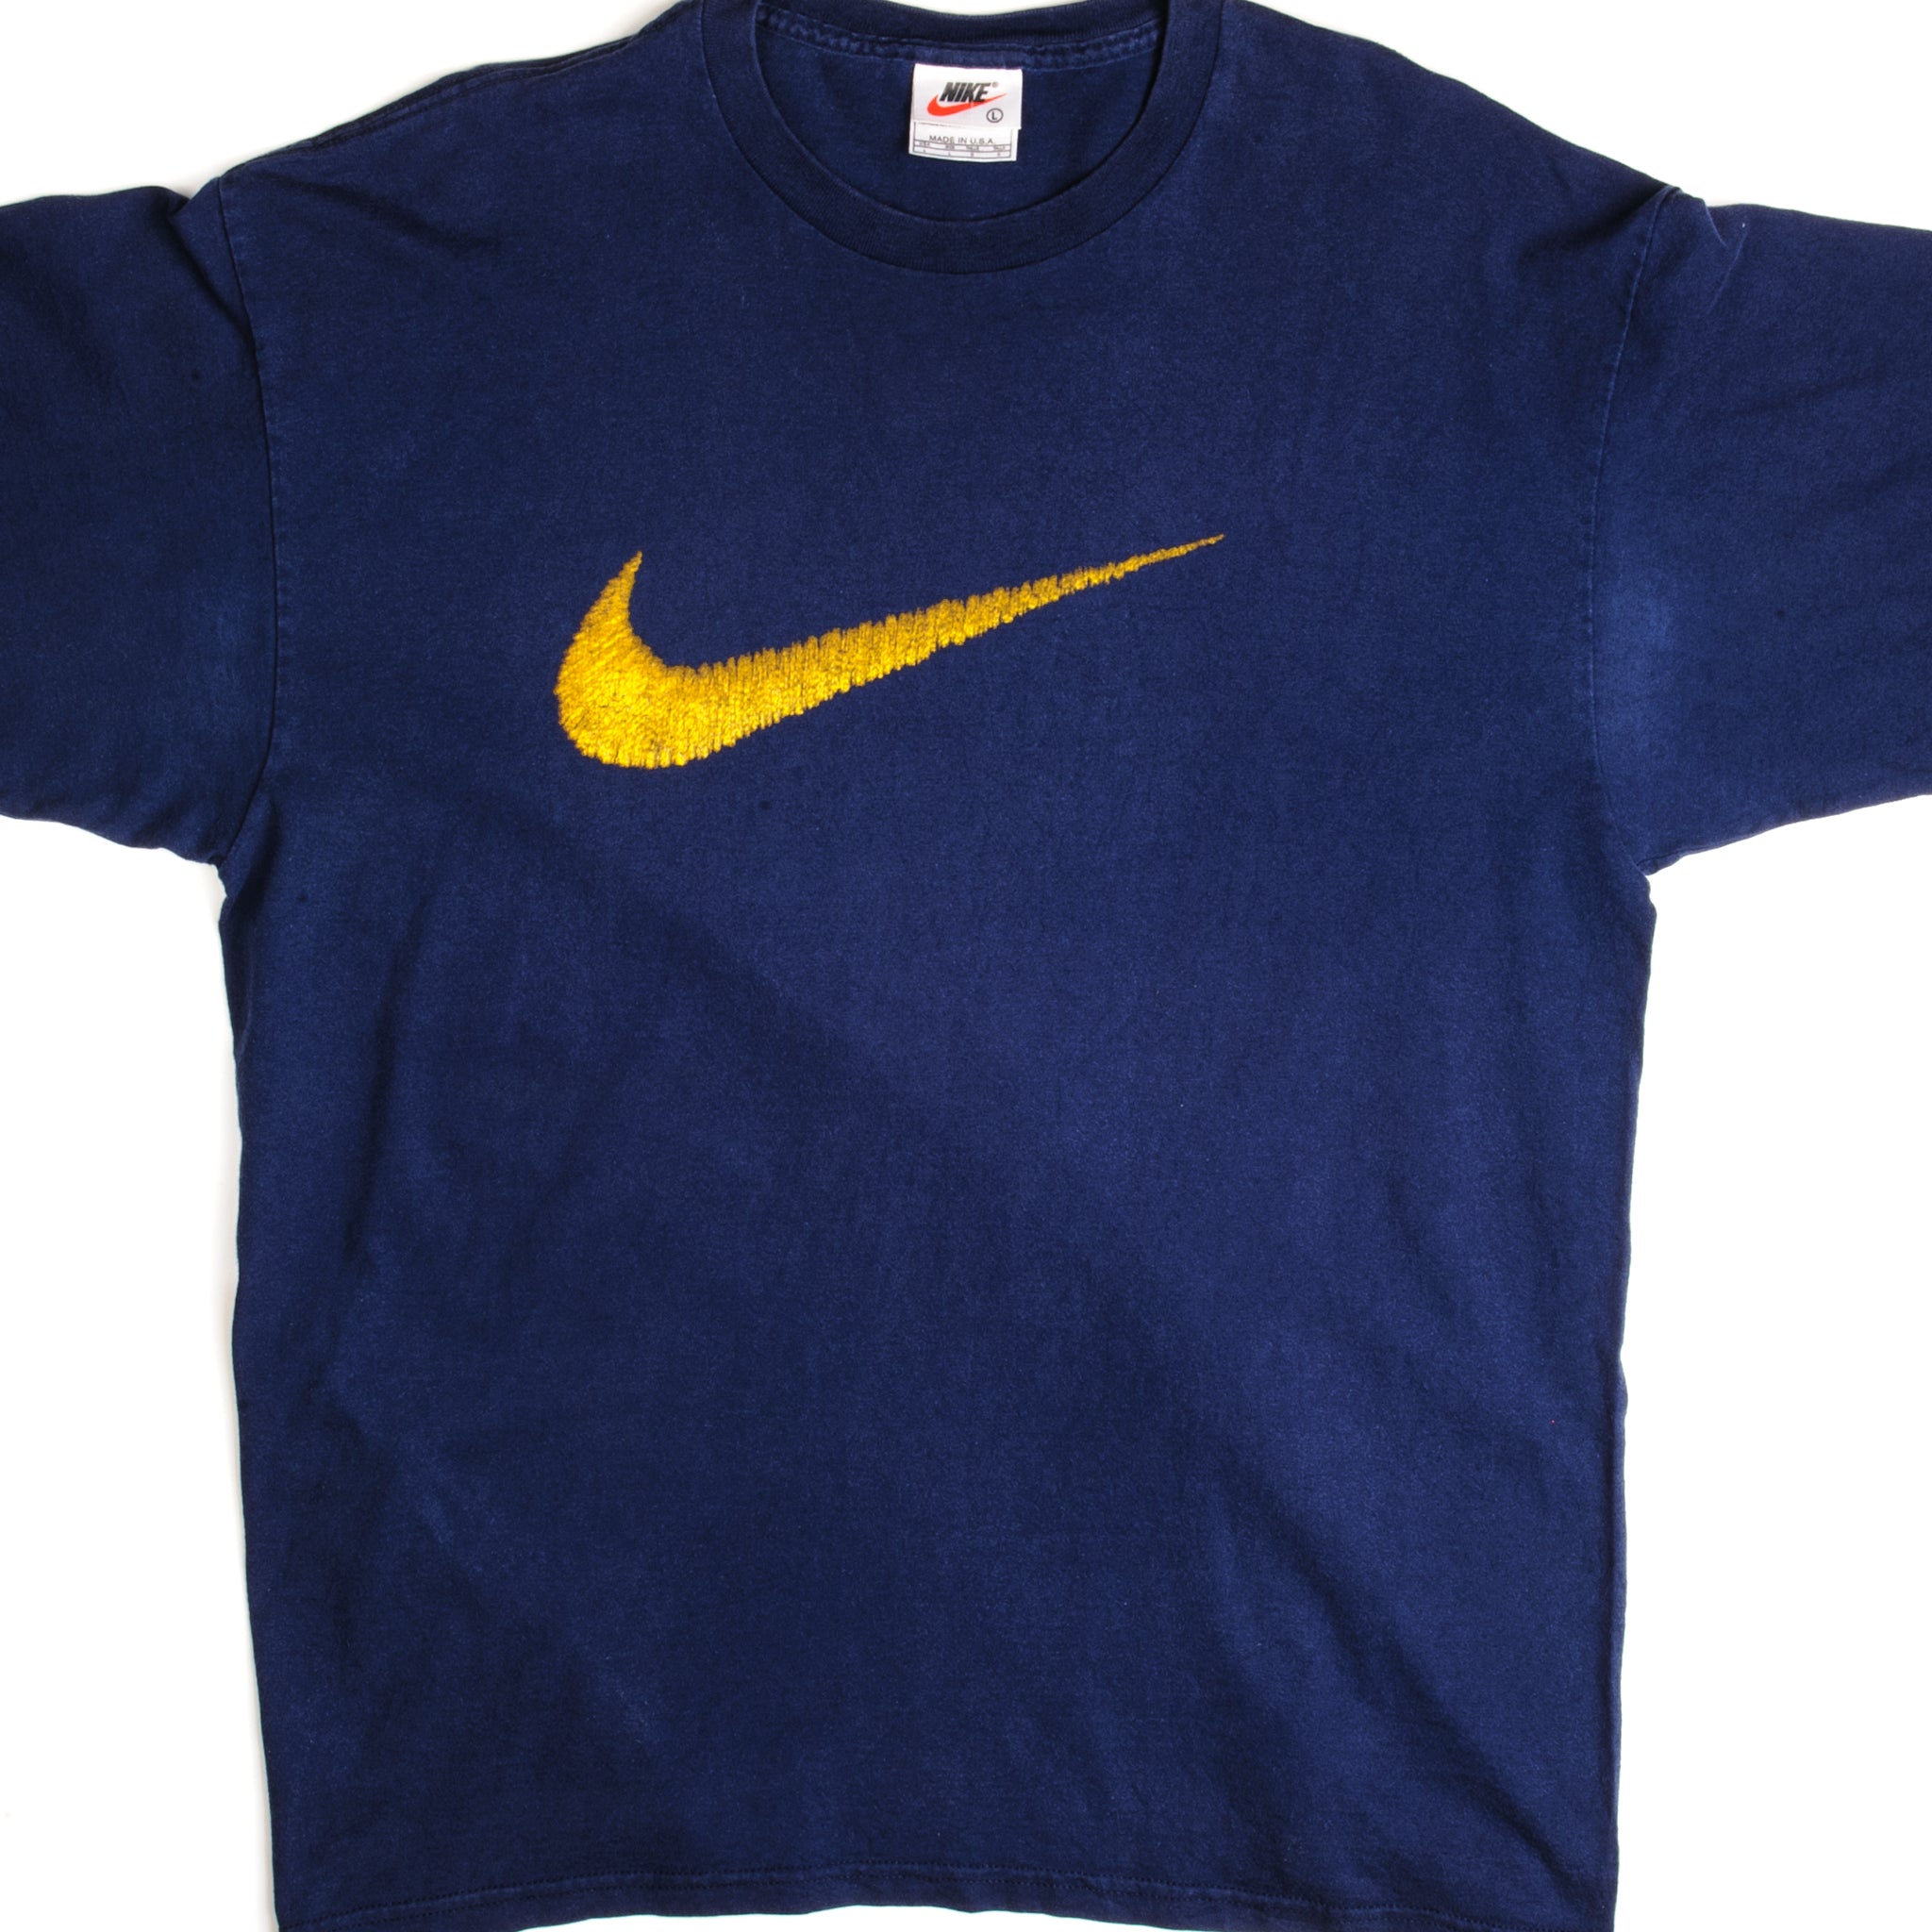 Vintage Nike Logo T-Shirt